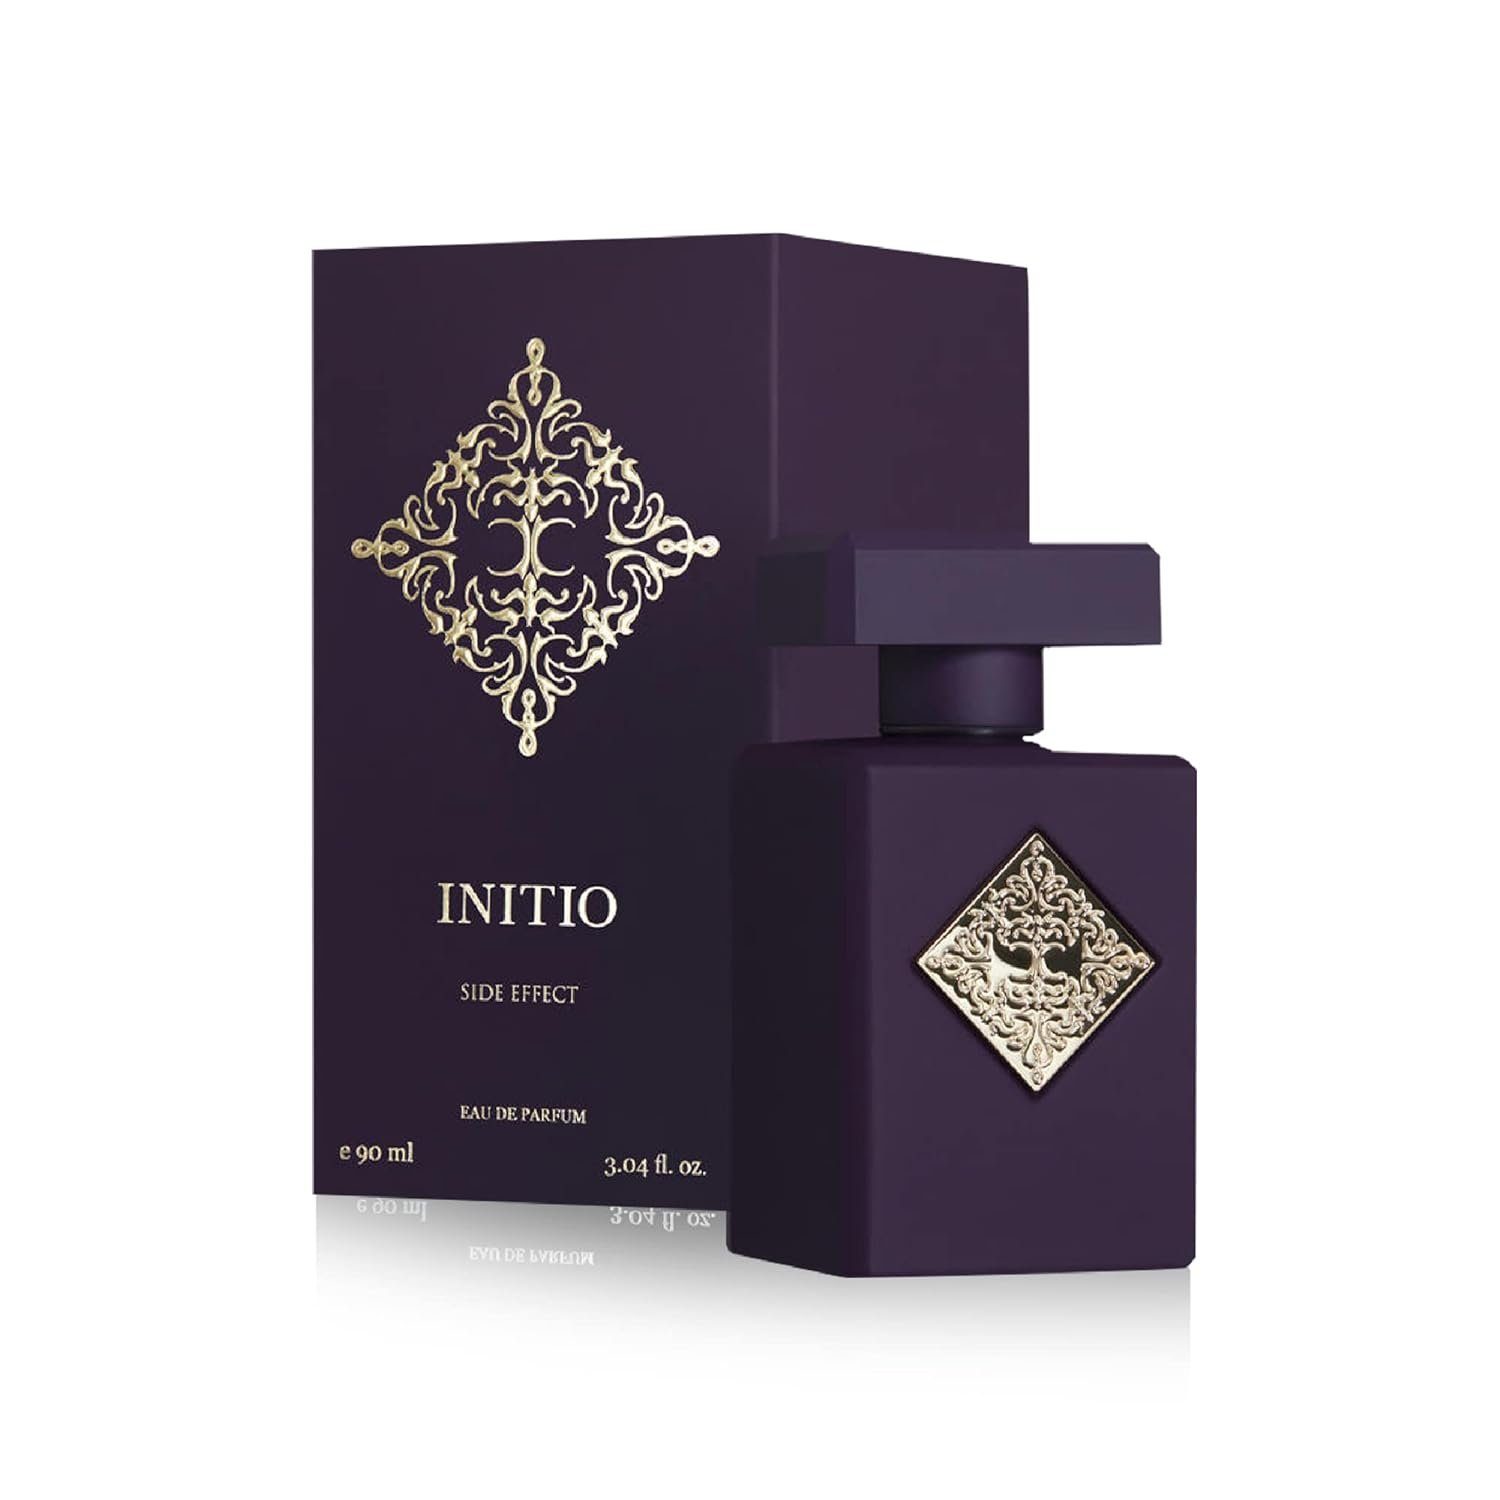 Initio Eau de Parfum Side effect 90ml